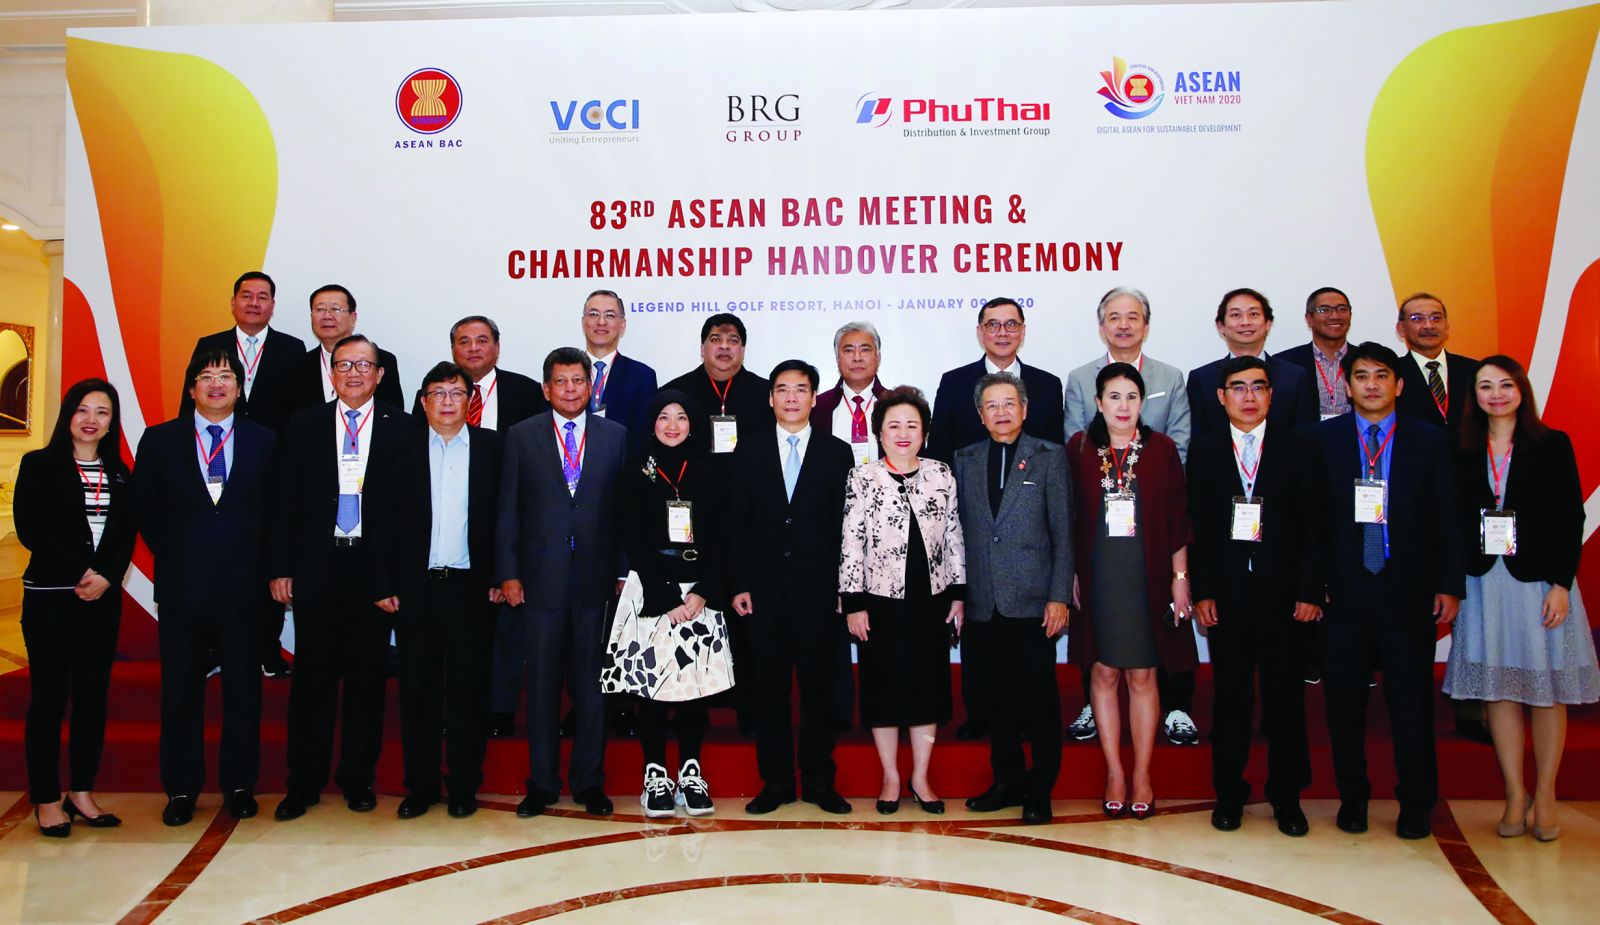  Đại biểu ASEAN BAC dự lễ chuyển giao chức Chủ tịch ASEAN BAC từ Thái Lan sang Việt Nam ngày 14/1/2020